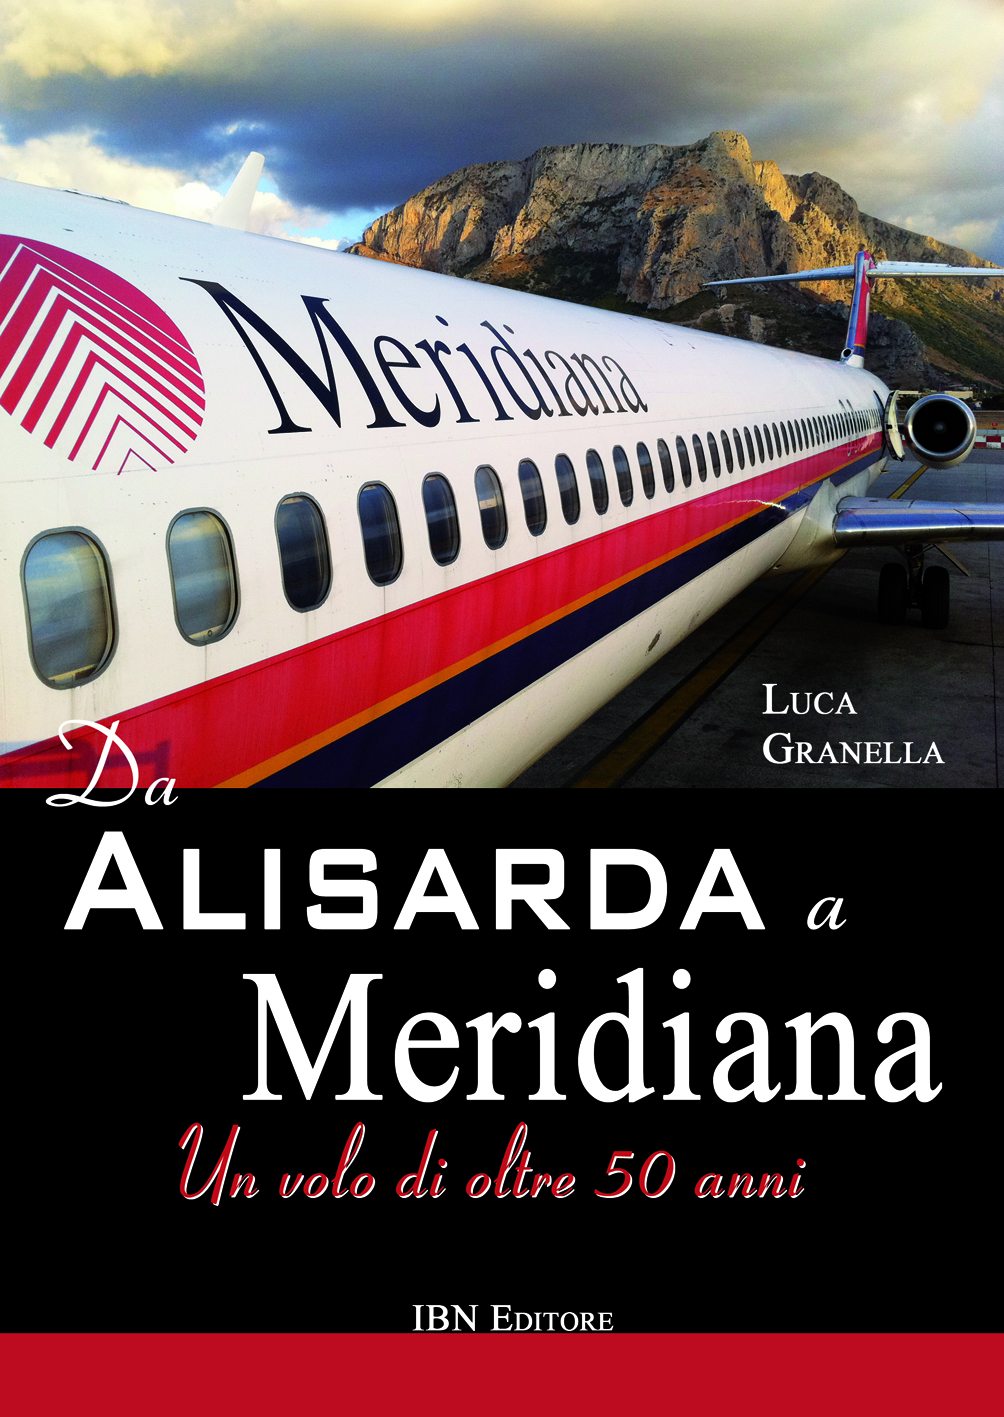 Da Alisarda a Meridiana – Un volo di oltre 50 anni